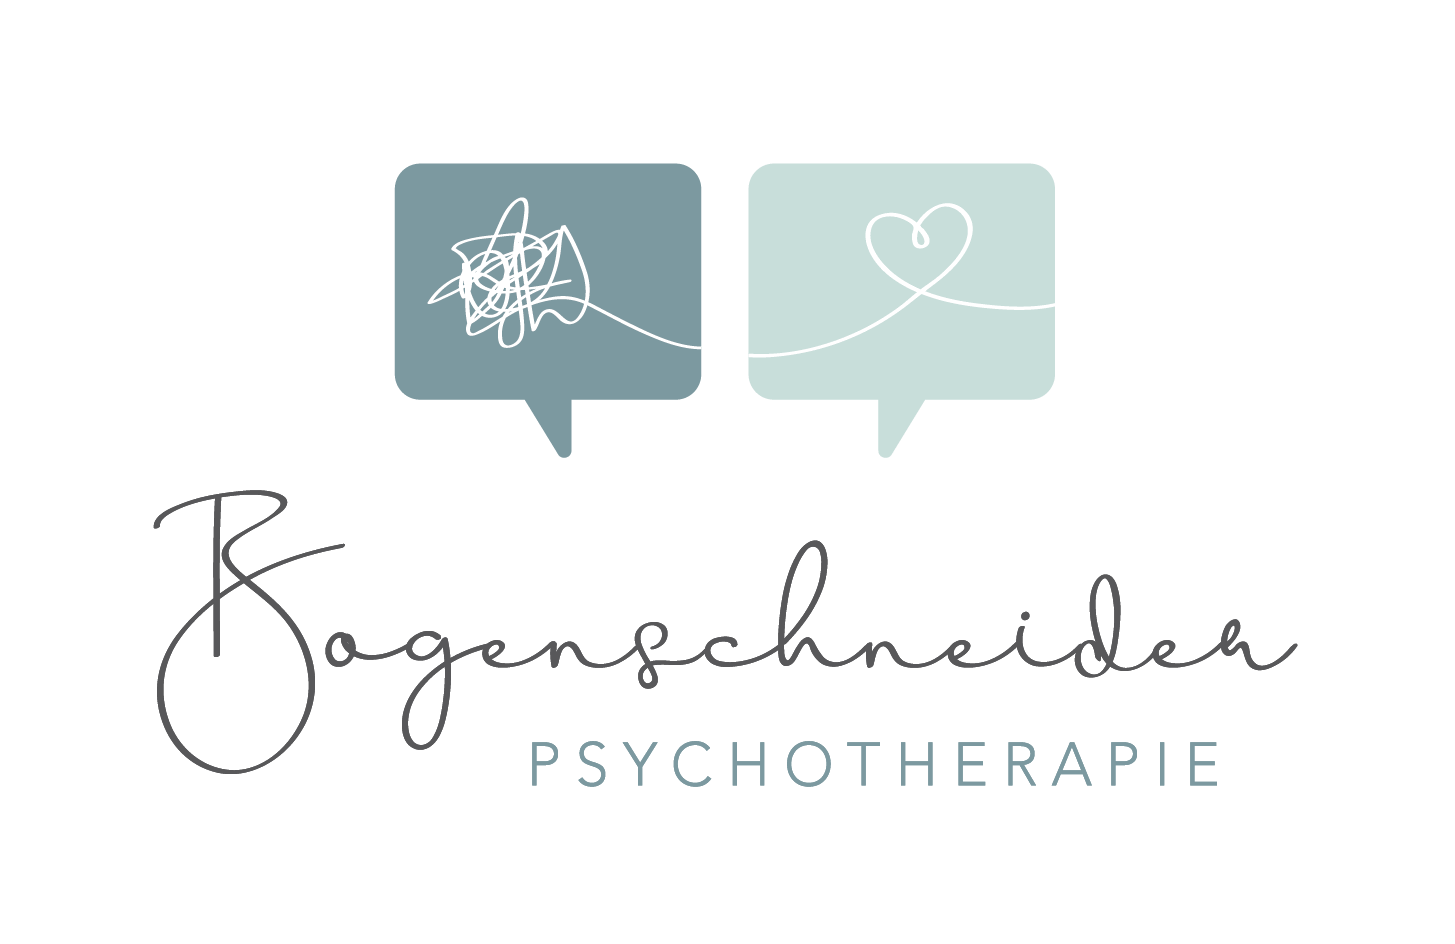 Bogenschneider Psychotherapie Logo